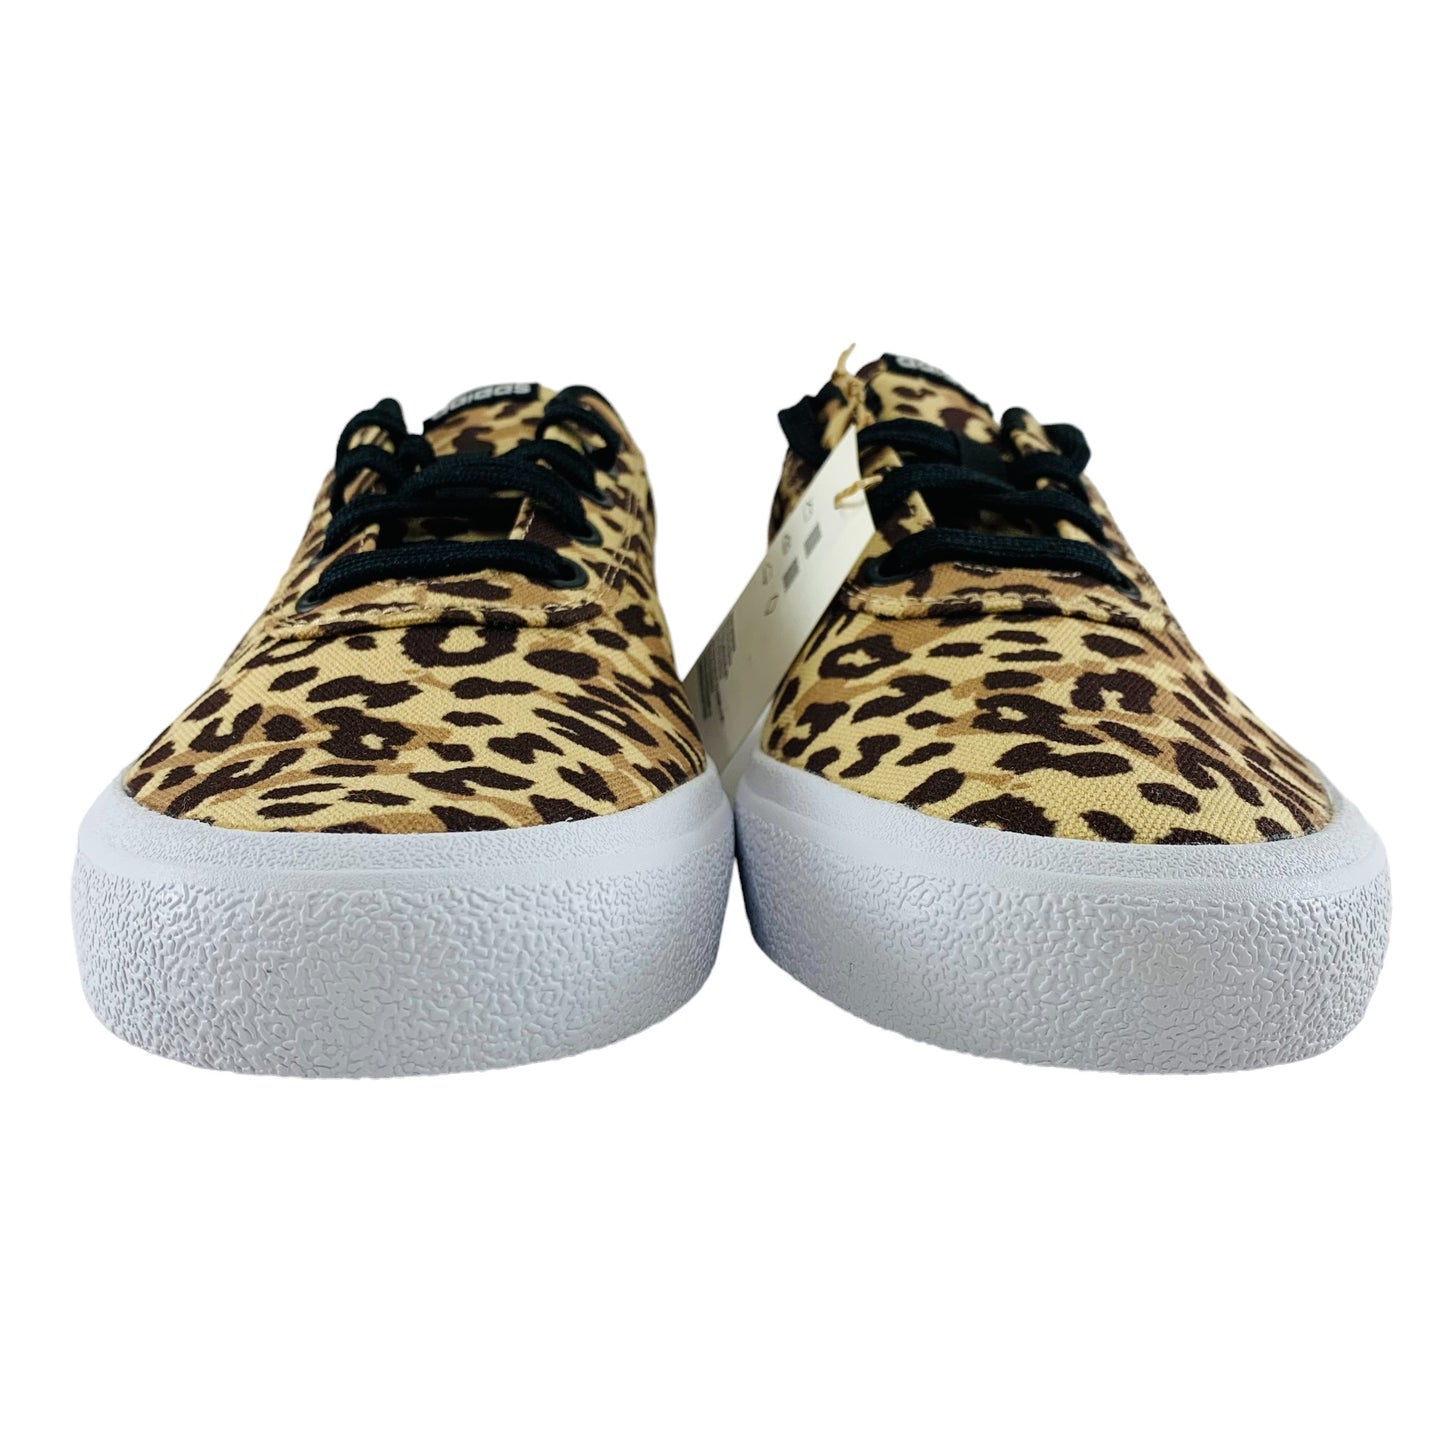 Adidas FARM Rio x Vulc Raid3r Leopard Print